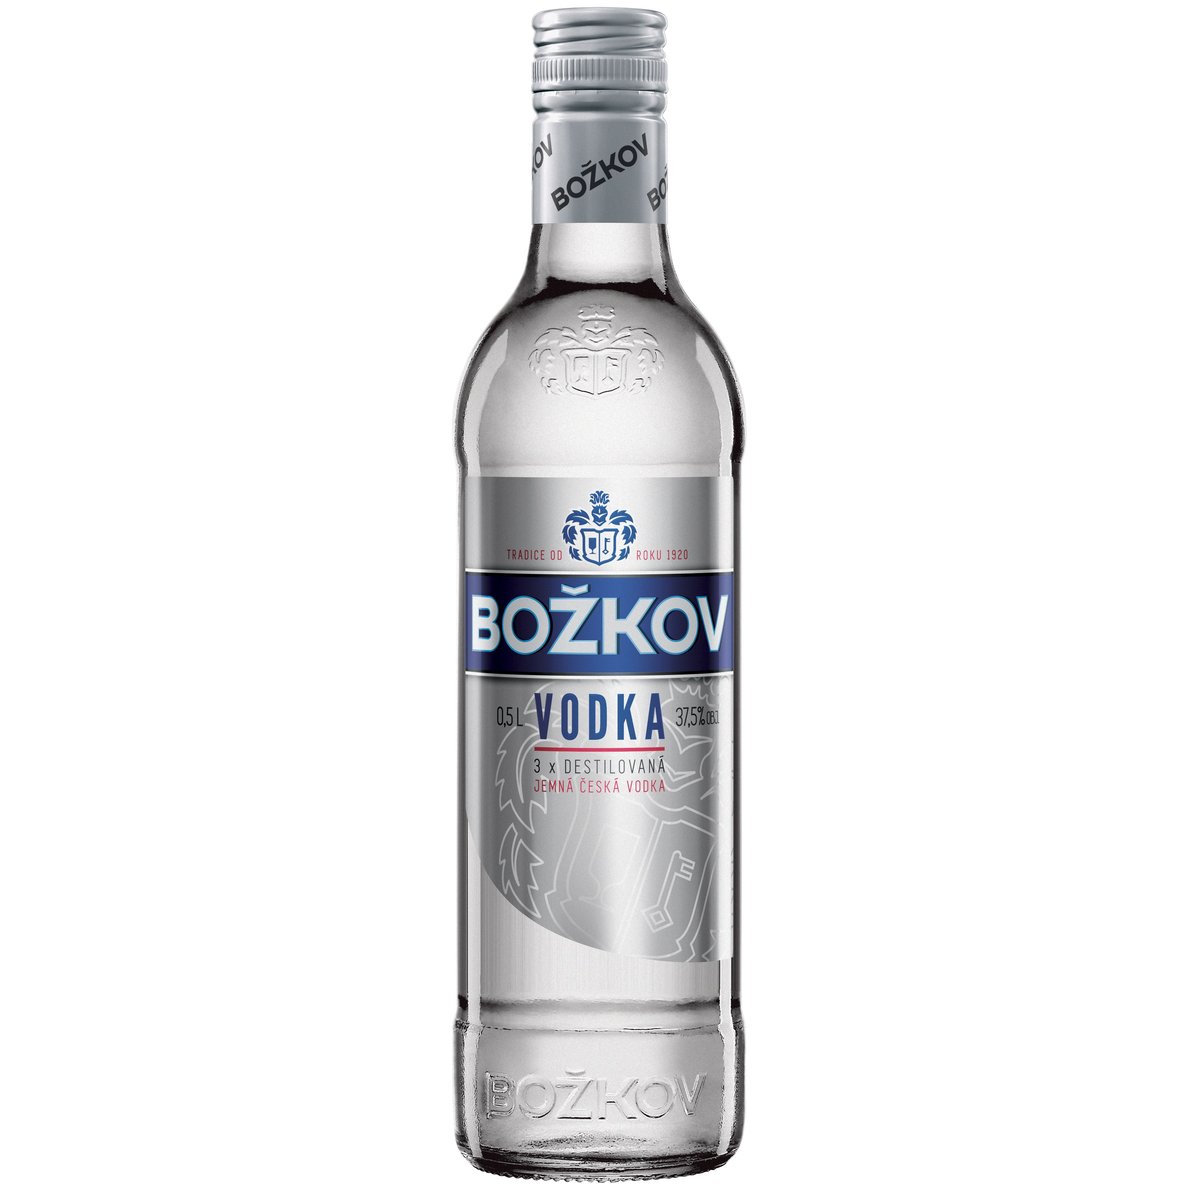 Božkov Vodka 37,5% v akci